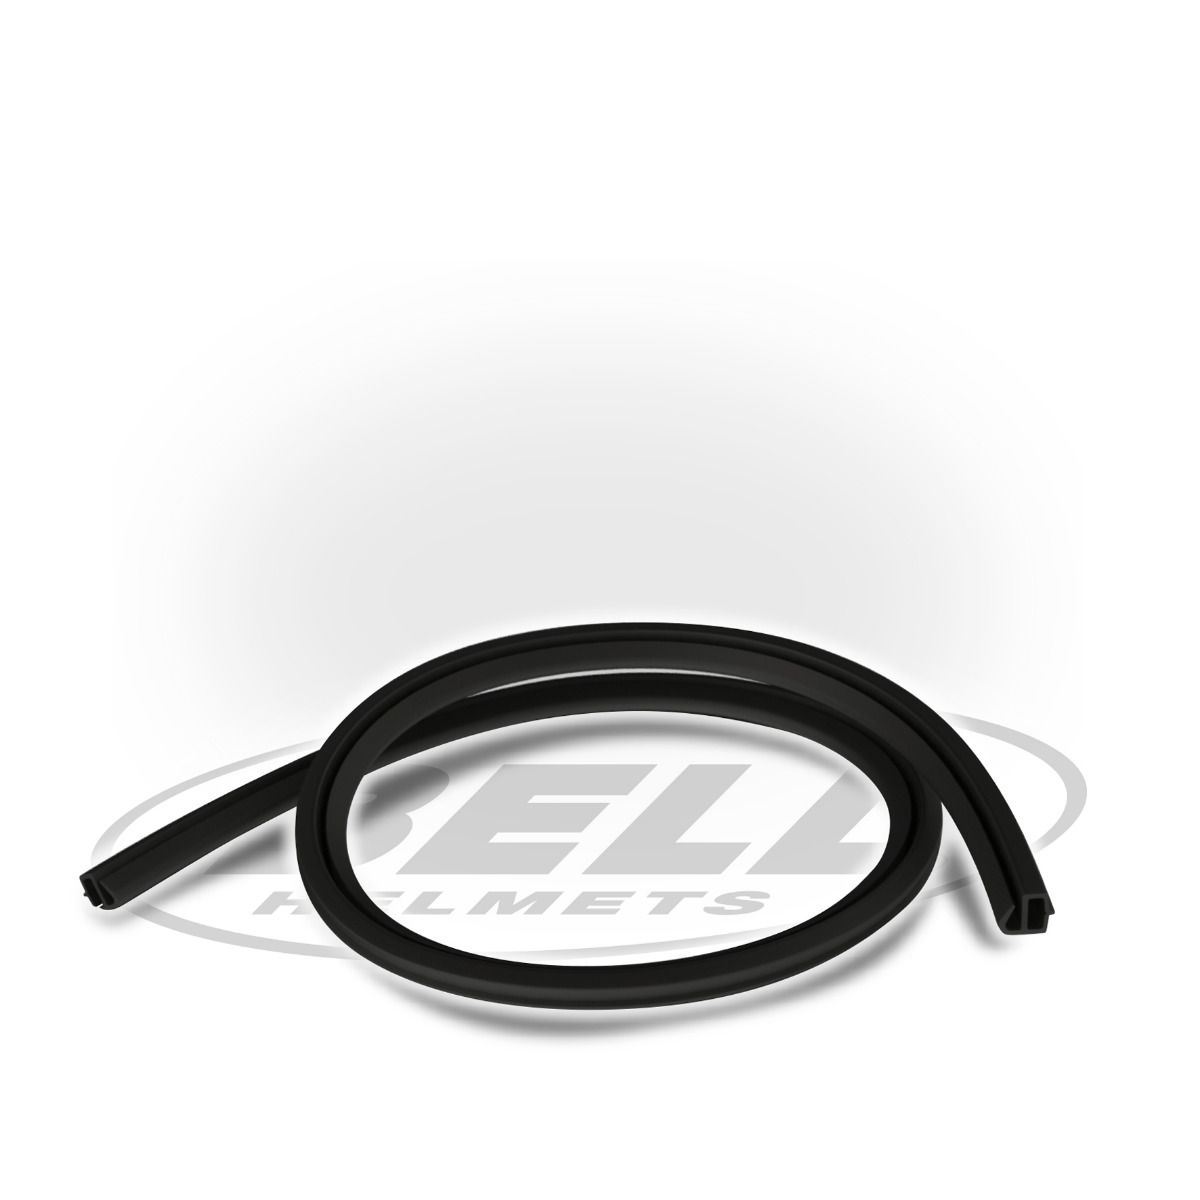 BELL 2090011 Rubber profile kit - visor eyeport edge, 77 cm lenth, black Photo-1 